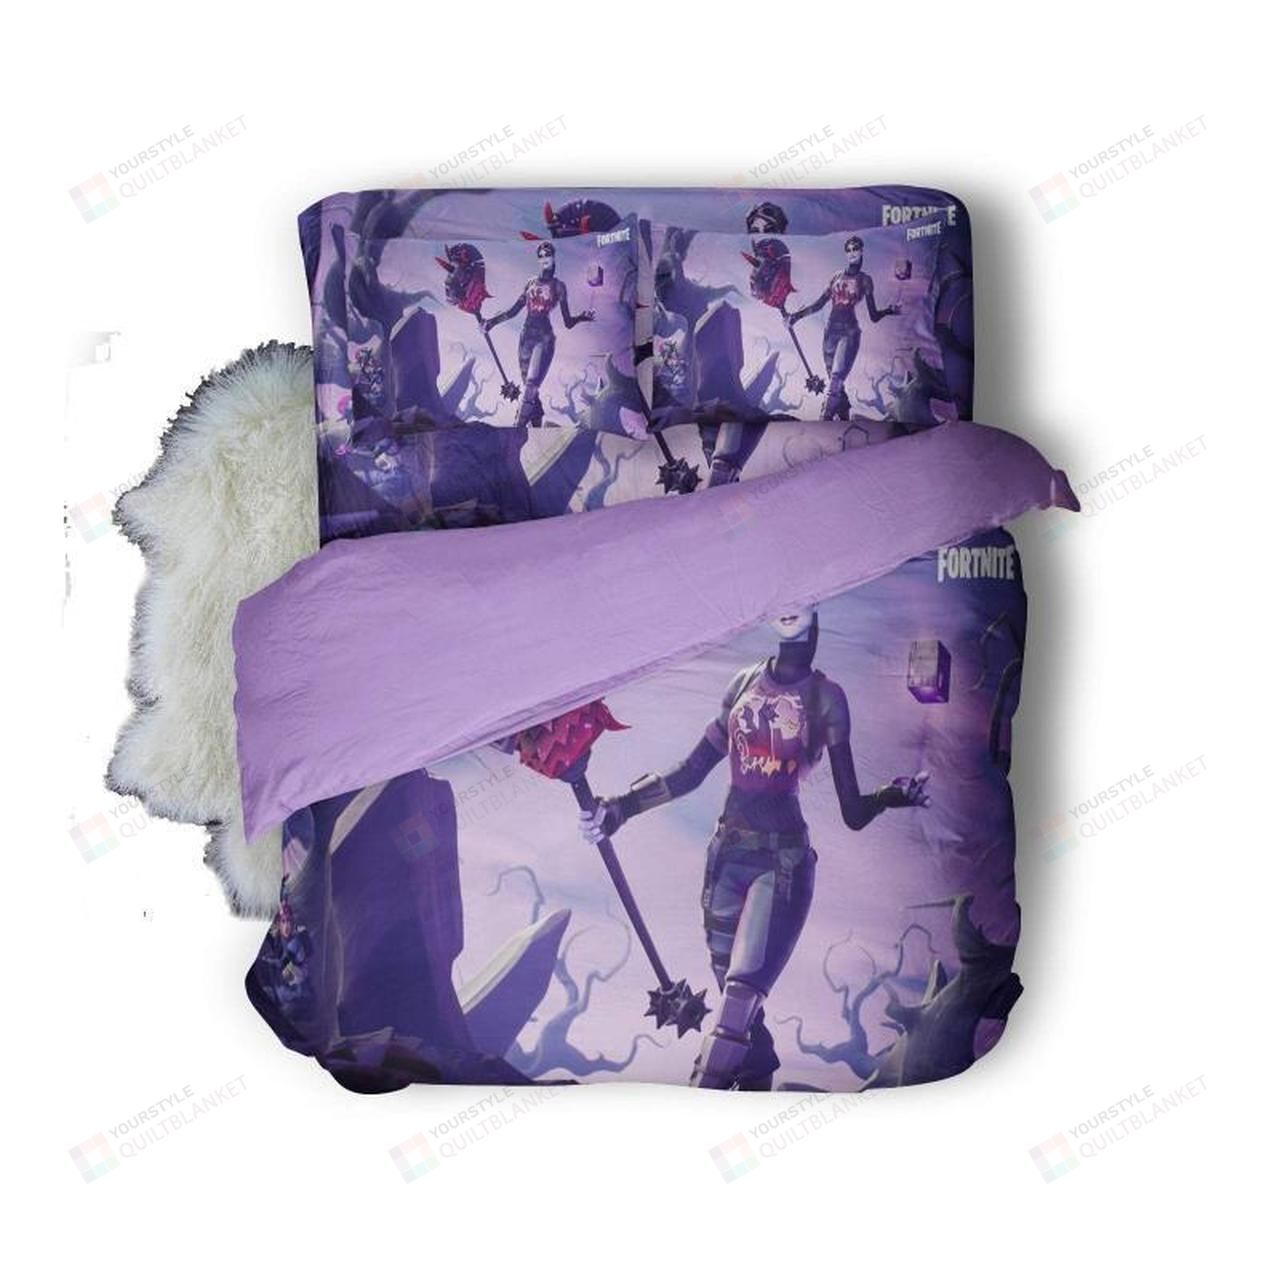 Fortnite Dark Bomber Purple Bedding Set (Duvet Cover & Pillow Cases)